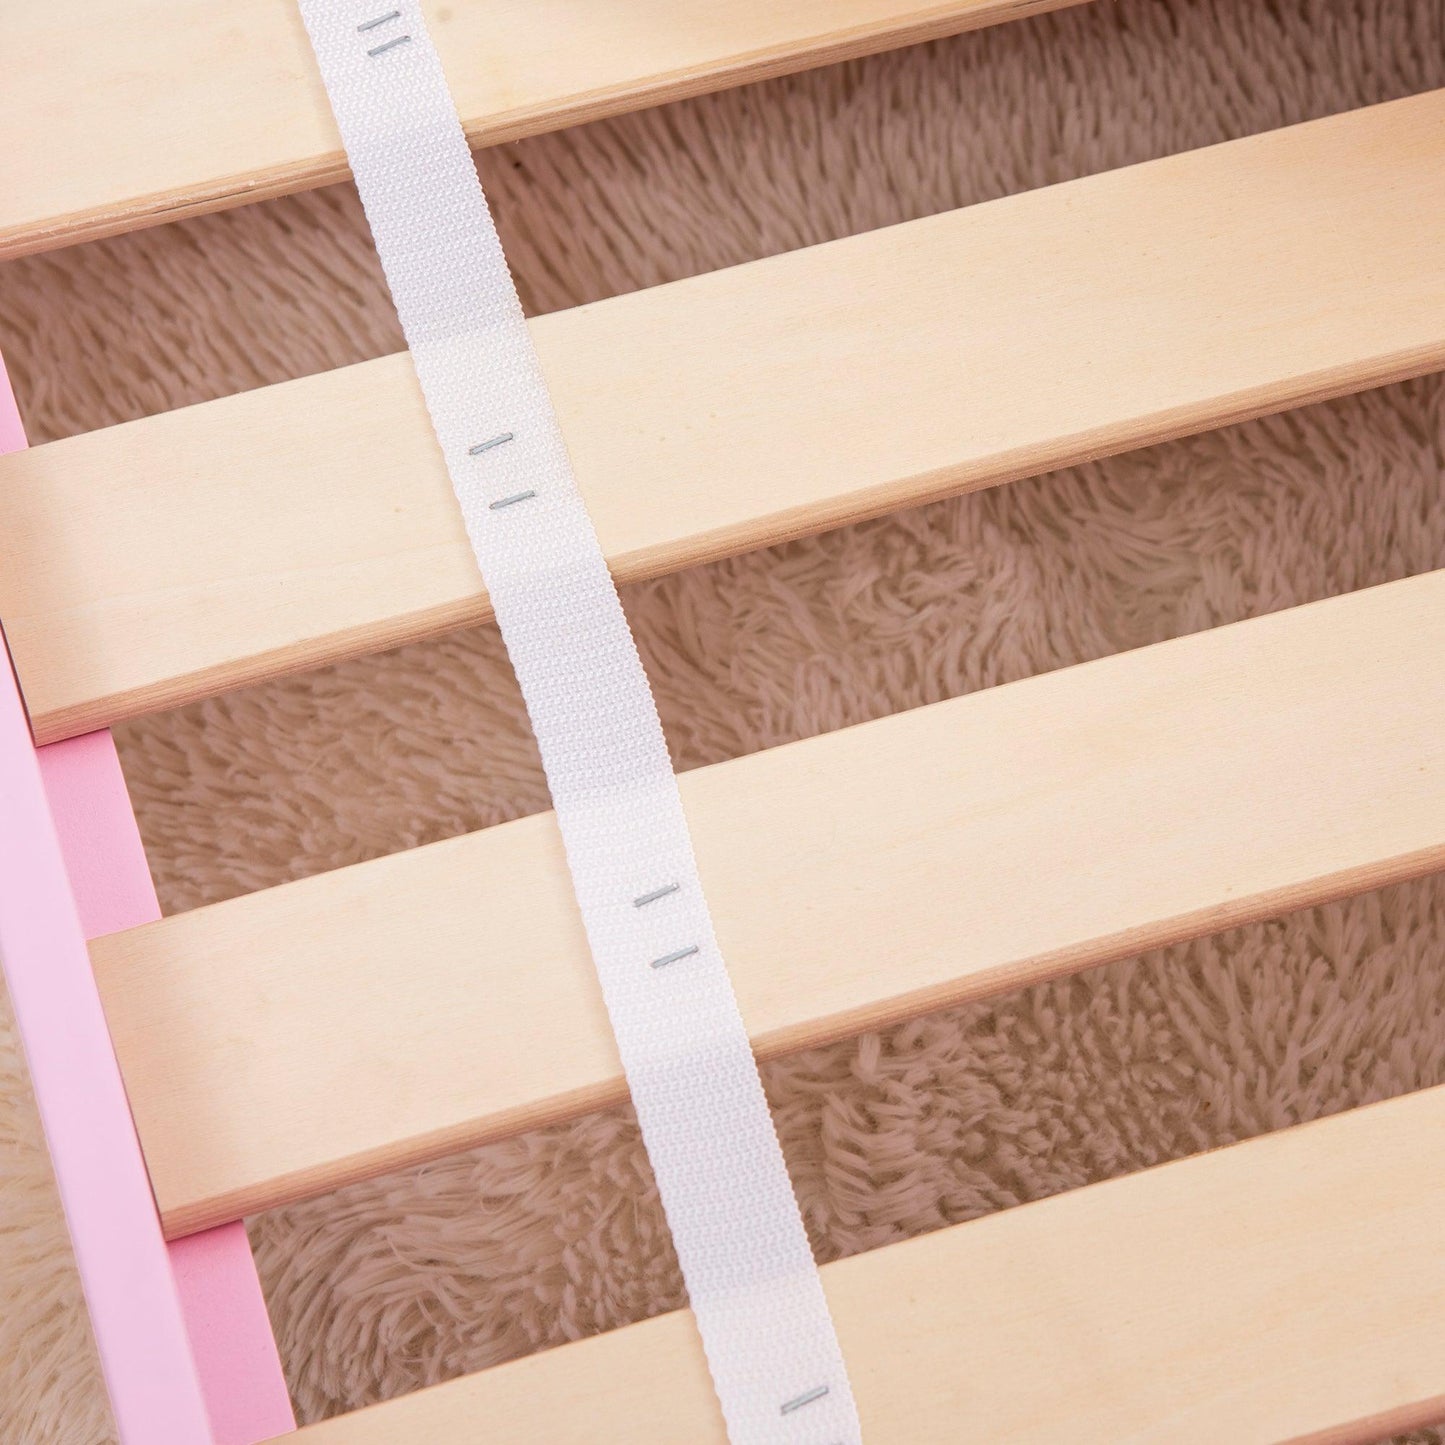 ZONEKIZ Kids Toddler Bed w/ Cute Patterns, Safety Rails - Pink